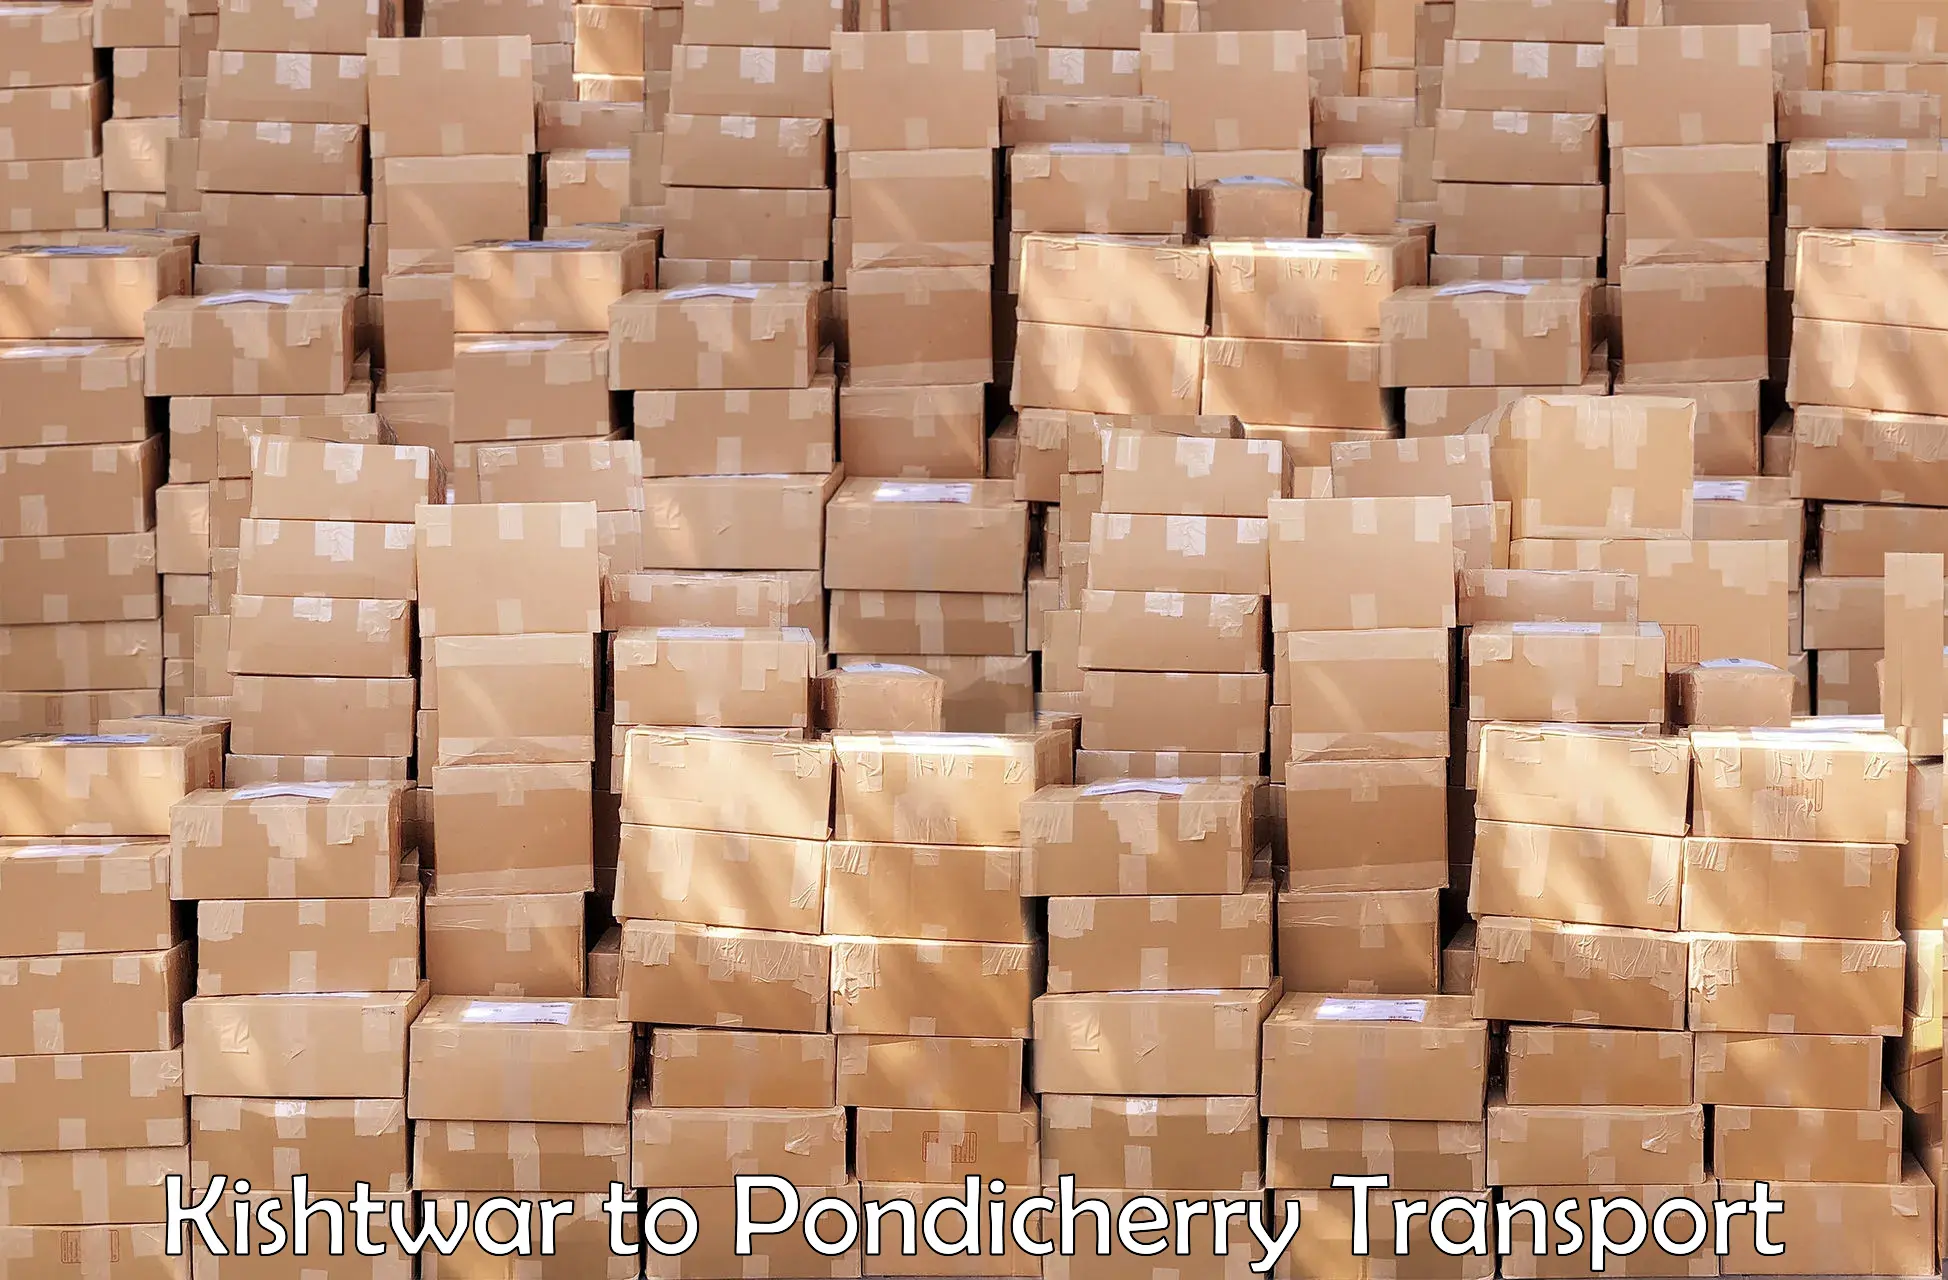 Parcel transport services Kishtwar to Pondicherry